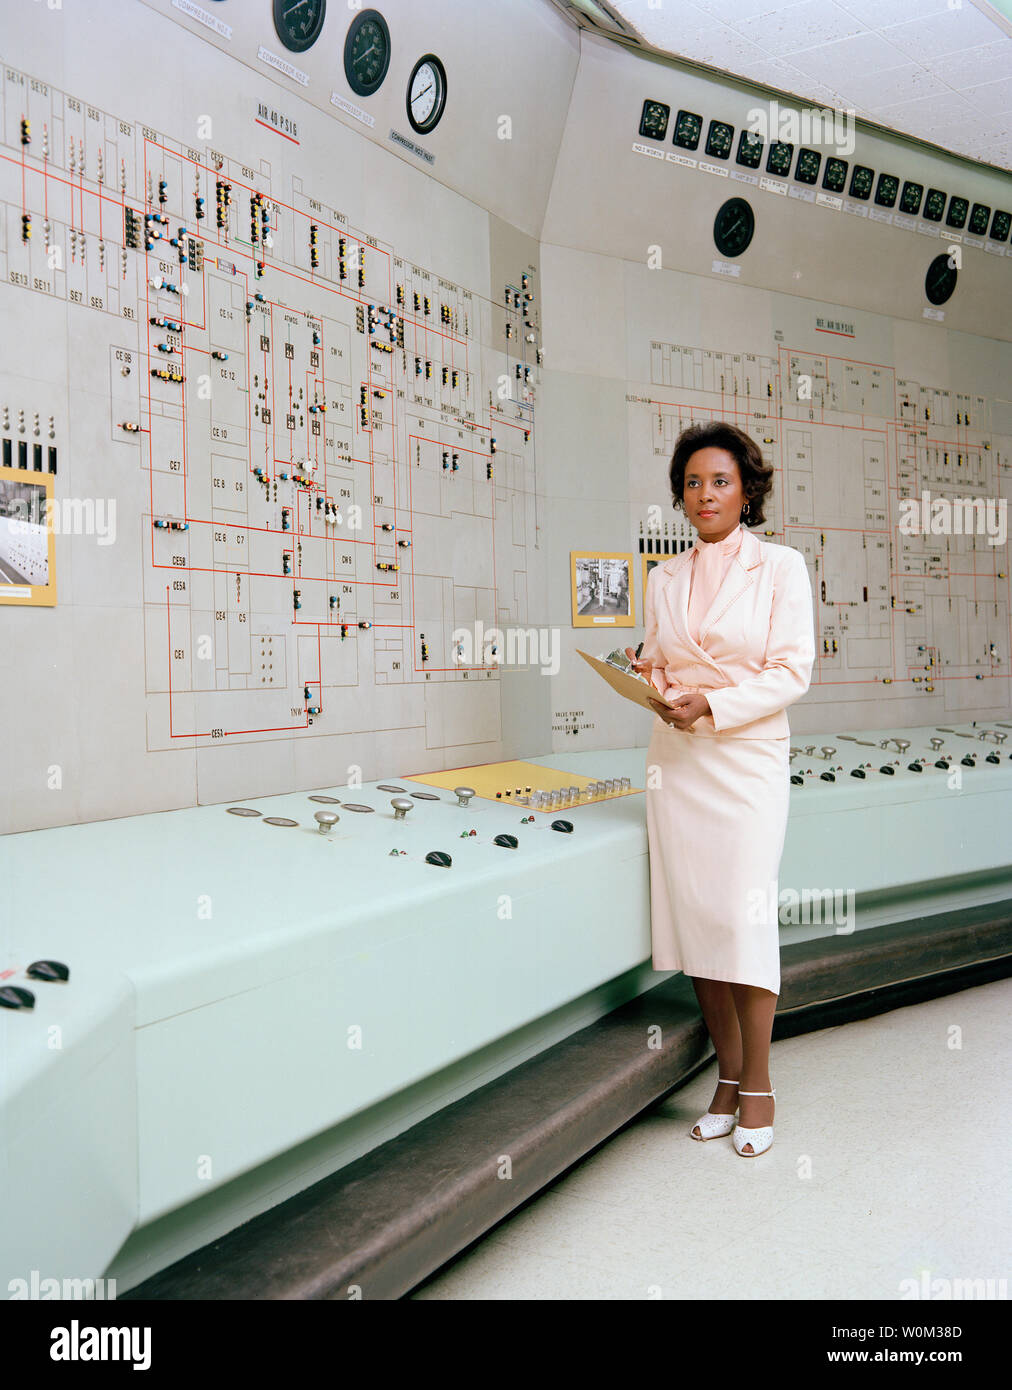 En 1955, Annie Easley a débuté sa carrière à la NASA, puis le National Advisory Committee for Aeronautics (NACA), comme les droits de l'ordinateur d'effectuer des calculs mathématiques complexes. Quand les ordinateurs ont été remplacés par des machines, Easley a évolué avec la technologie. Elle est devenue une adepte programmeur informatique, en utilisant des langages comme la formule du système de traduction (Fortran) pour soutenir un certain nombre de programmes de la NASA. Elle a développé et mis en œuvre le code utilisé dans la recherche sur les systèmes de conversion d'énergie, de l'analyse d'autres power, y compris la technologie de batterie qui a été utilisé pour le véhicules hybrides Banque D'Images